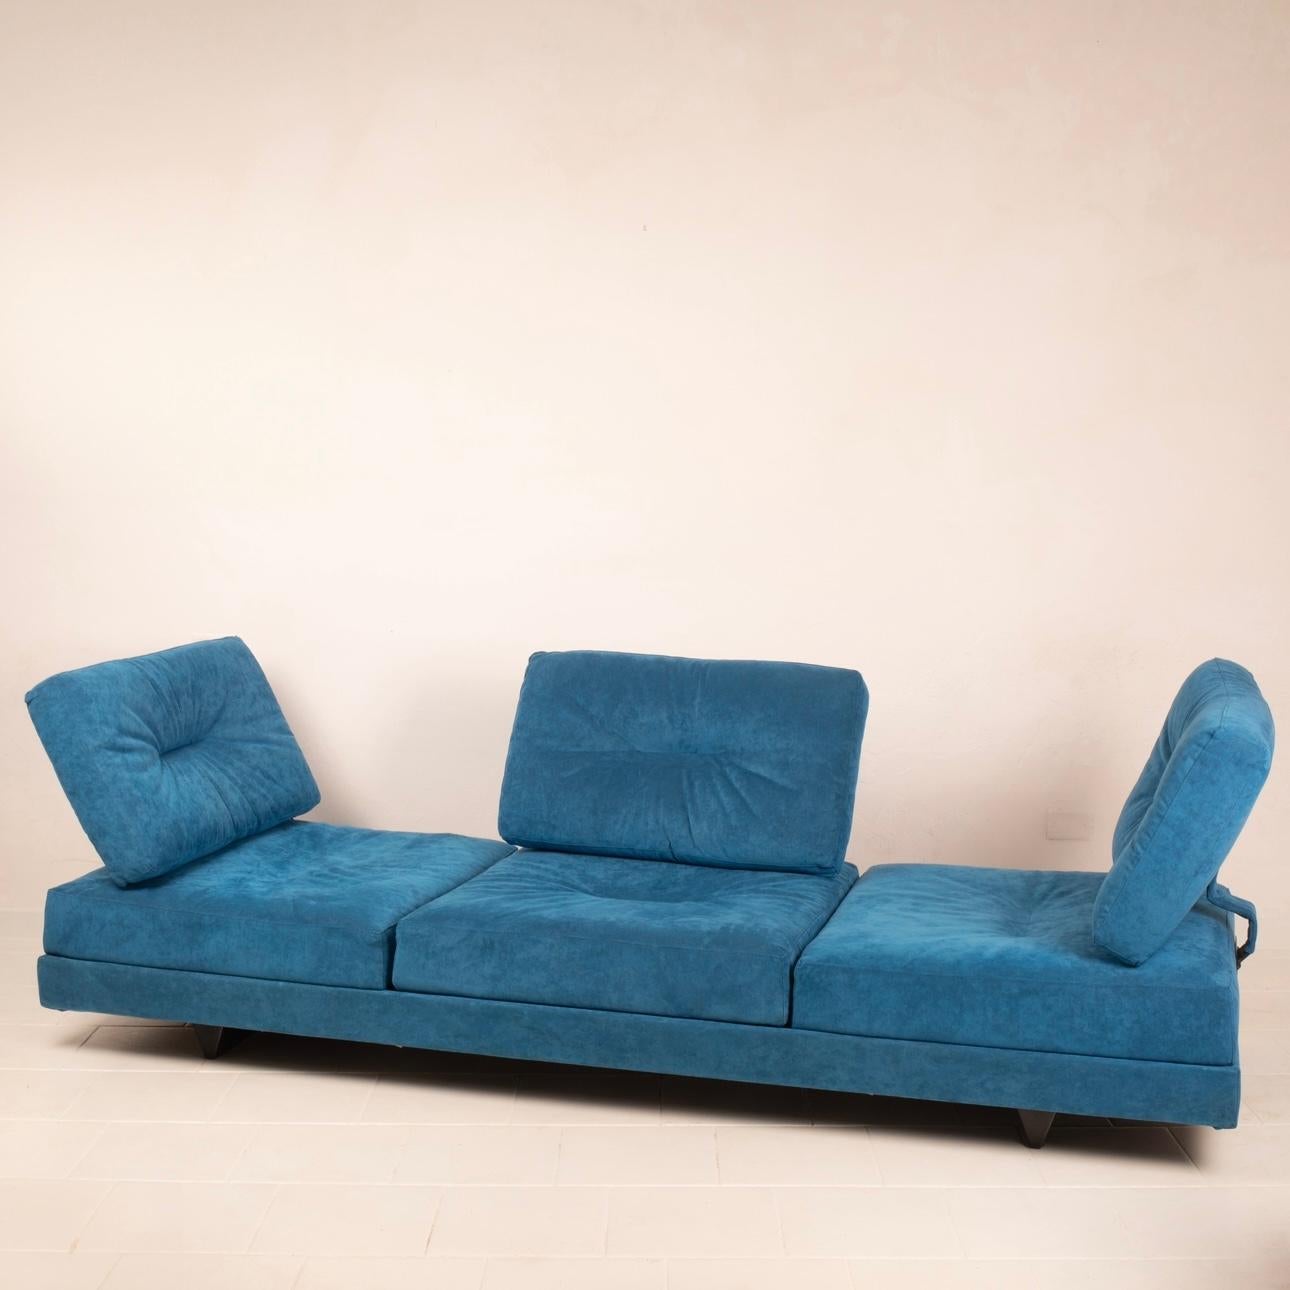 Stupendo divano tre posti modello Editor disegnato da Mauro Lipparini per Saporiti Italia.
Il divano è un sistema mobile e posizionabile a piacimento, in quanto i cuscini e le sedute si possono mettere in qualsiasi direzione, realizzato in alcantara